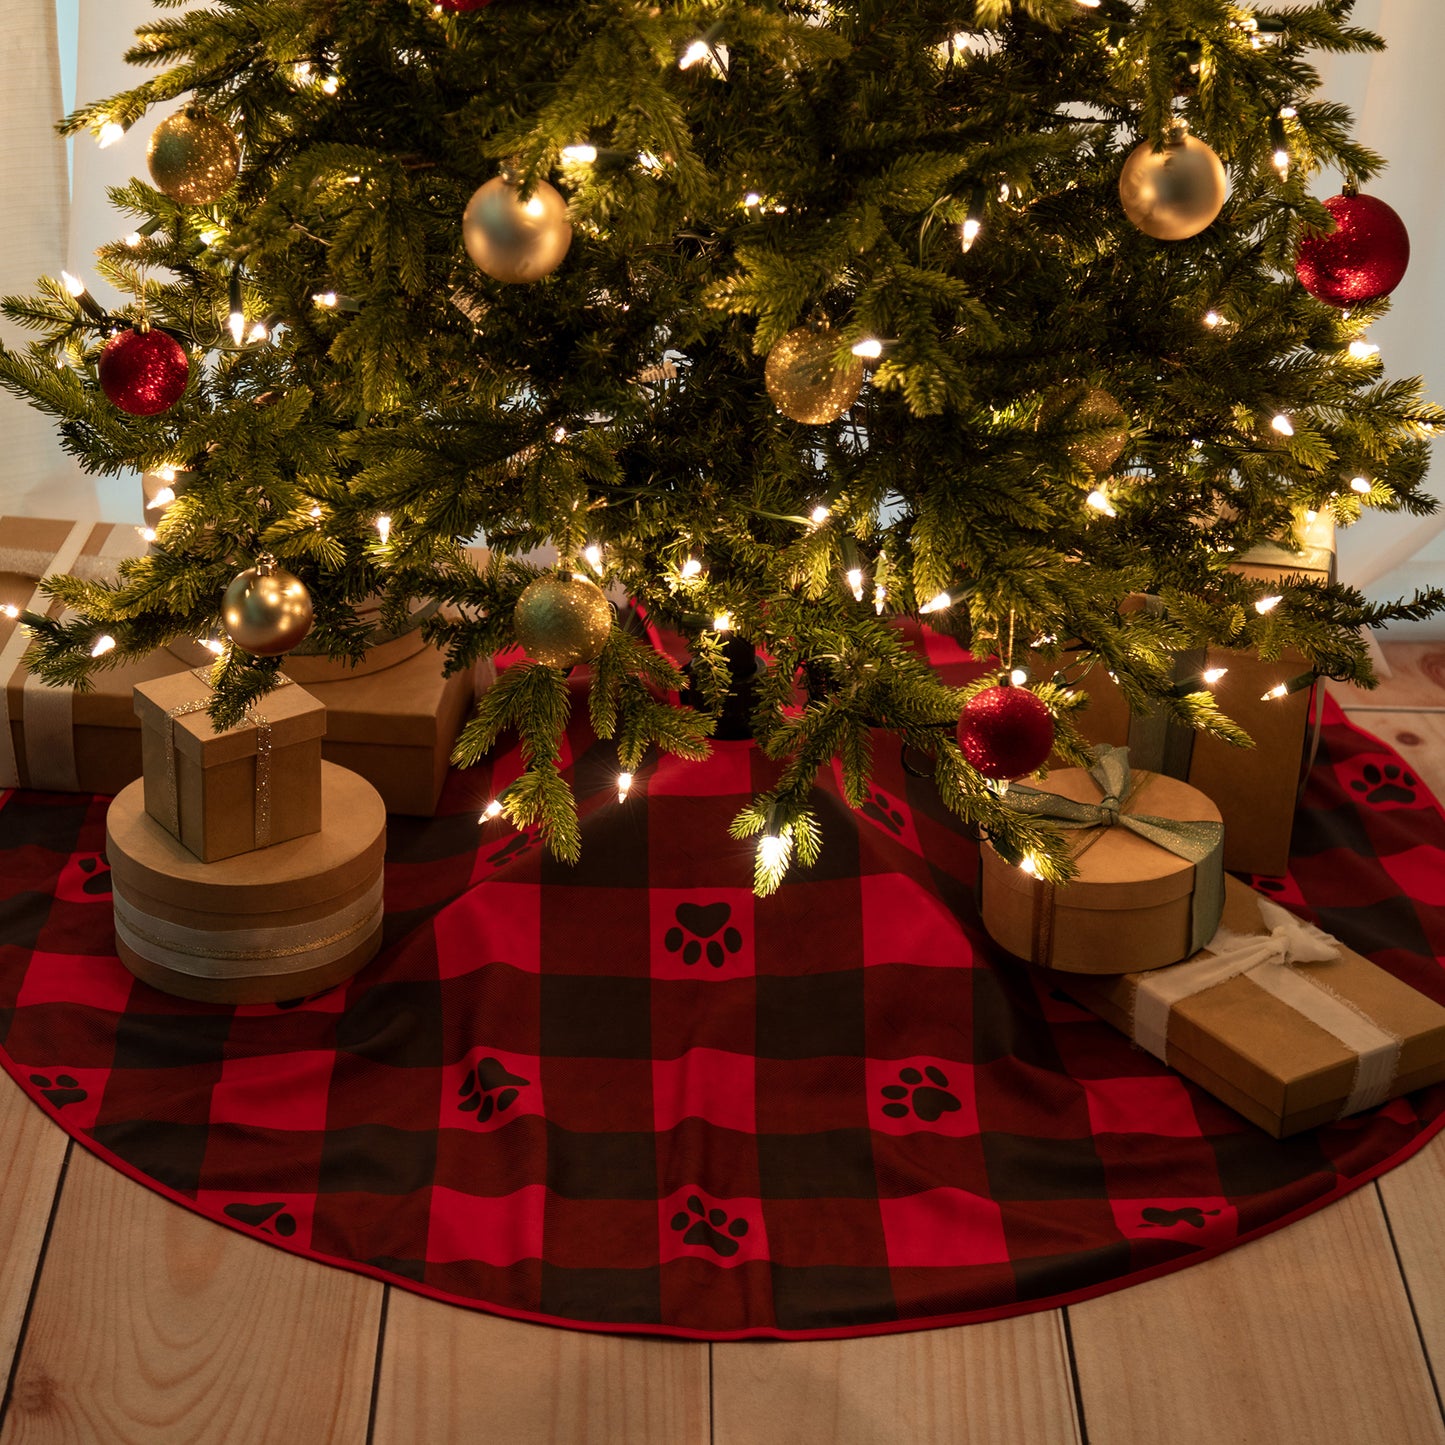 Pets & Paws Christmas Tree Skirt